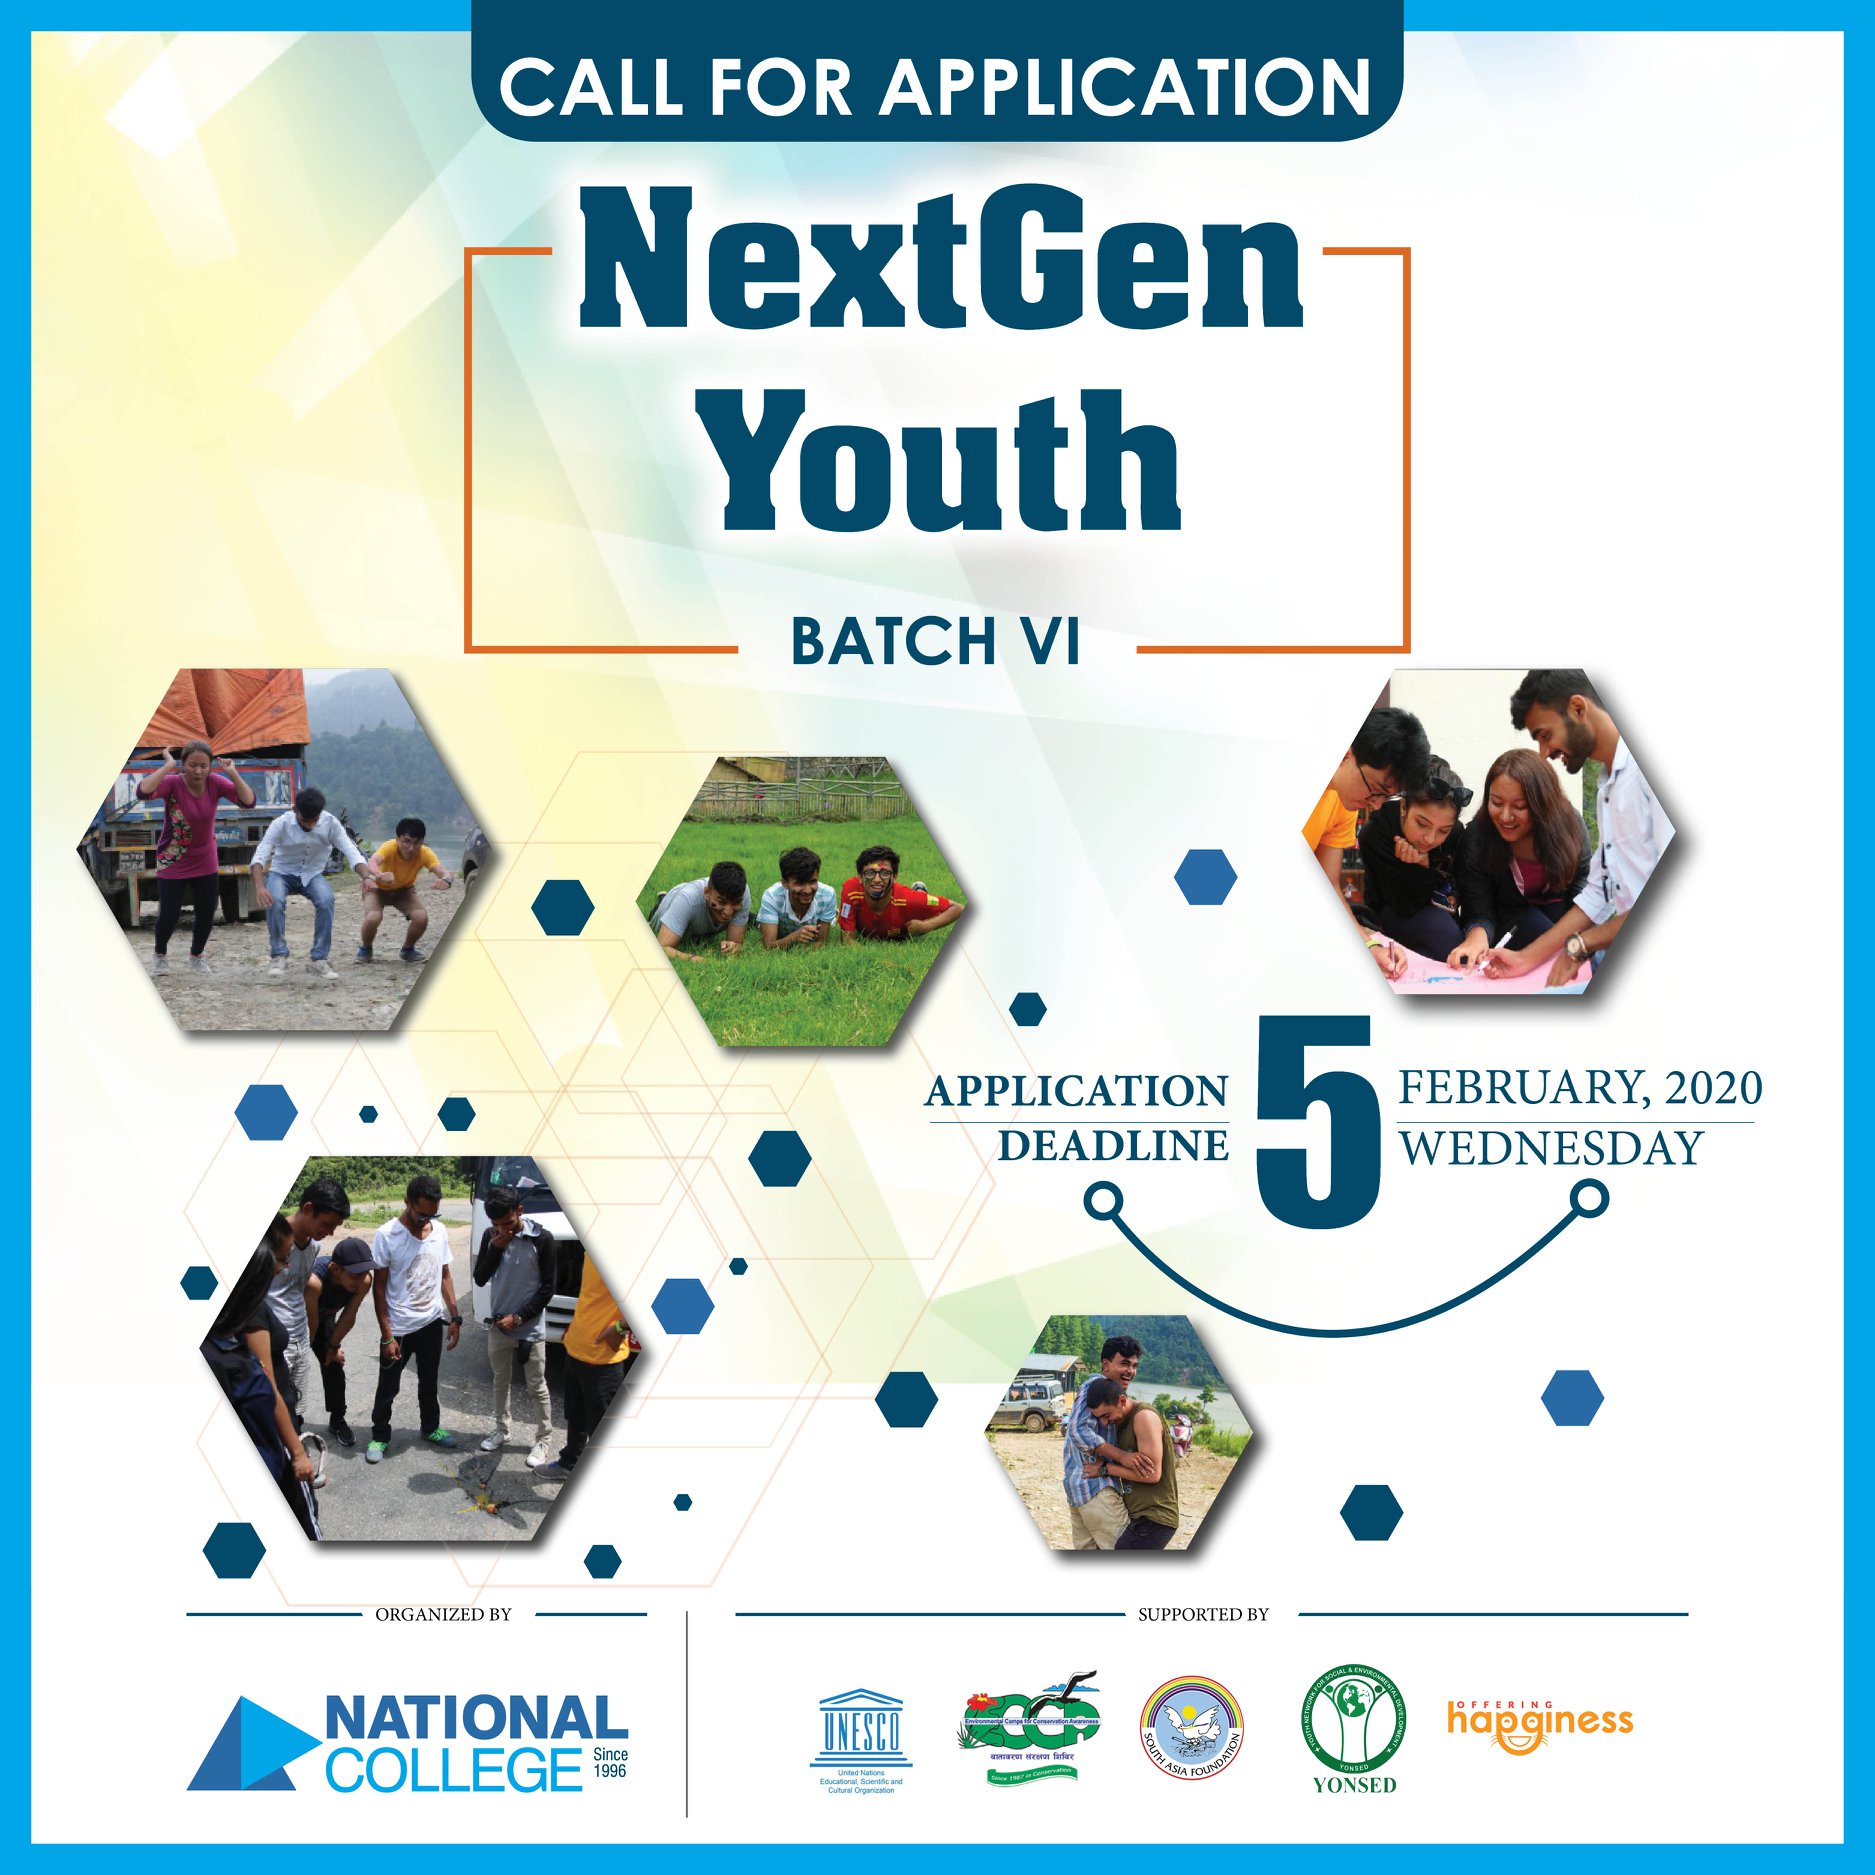 NextGen Youth -Batch VI registration